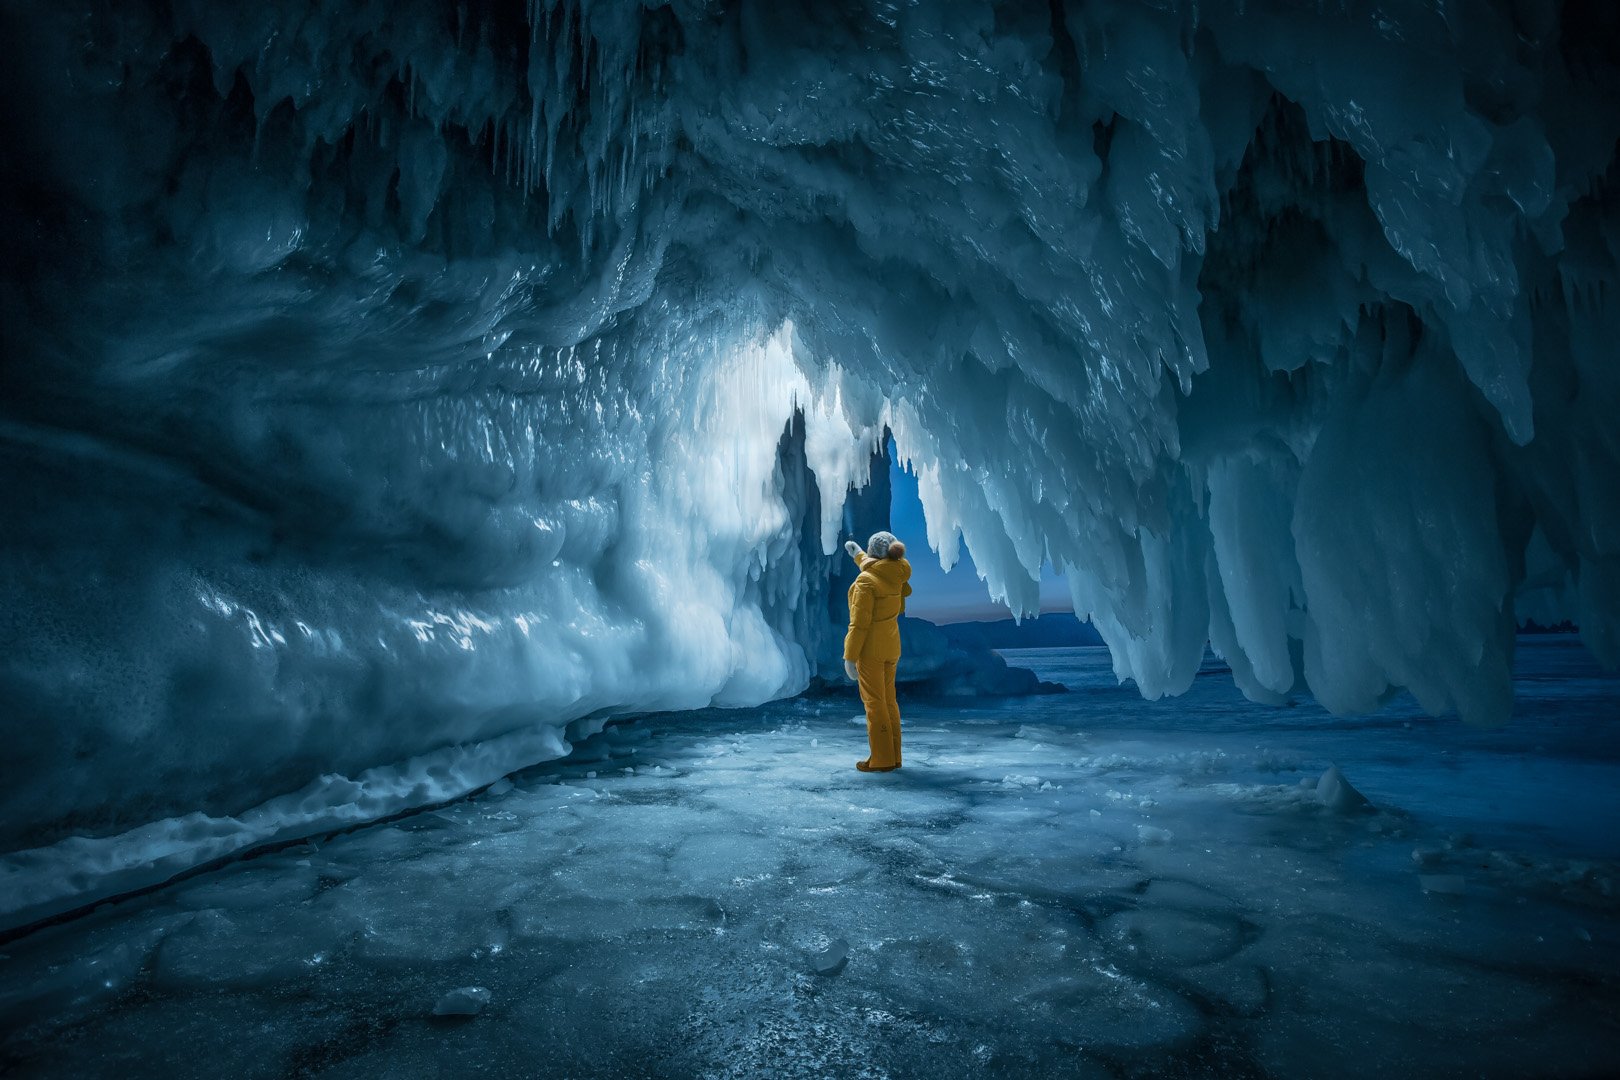 байкал, зима, лед, снег, путешествие, пещера, сосульки, человек, Сергей Шабанов